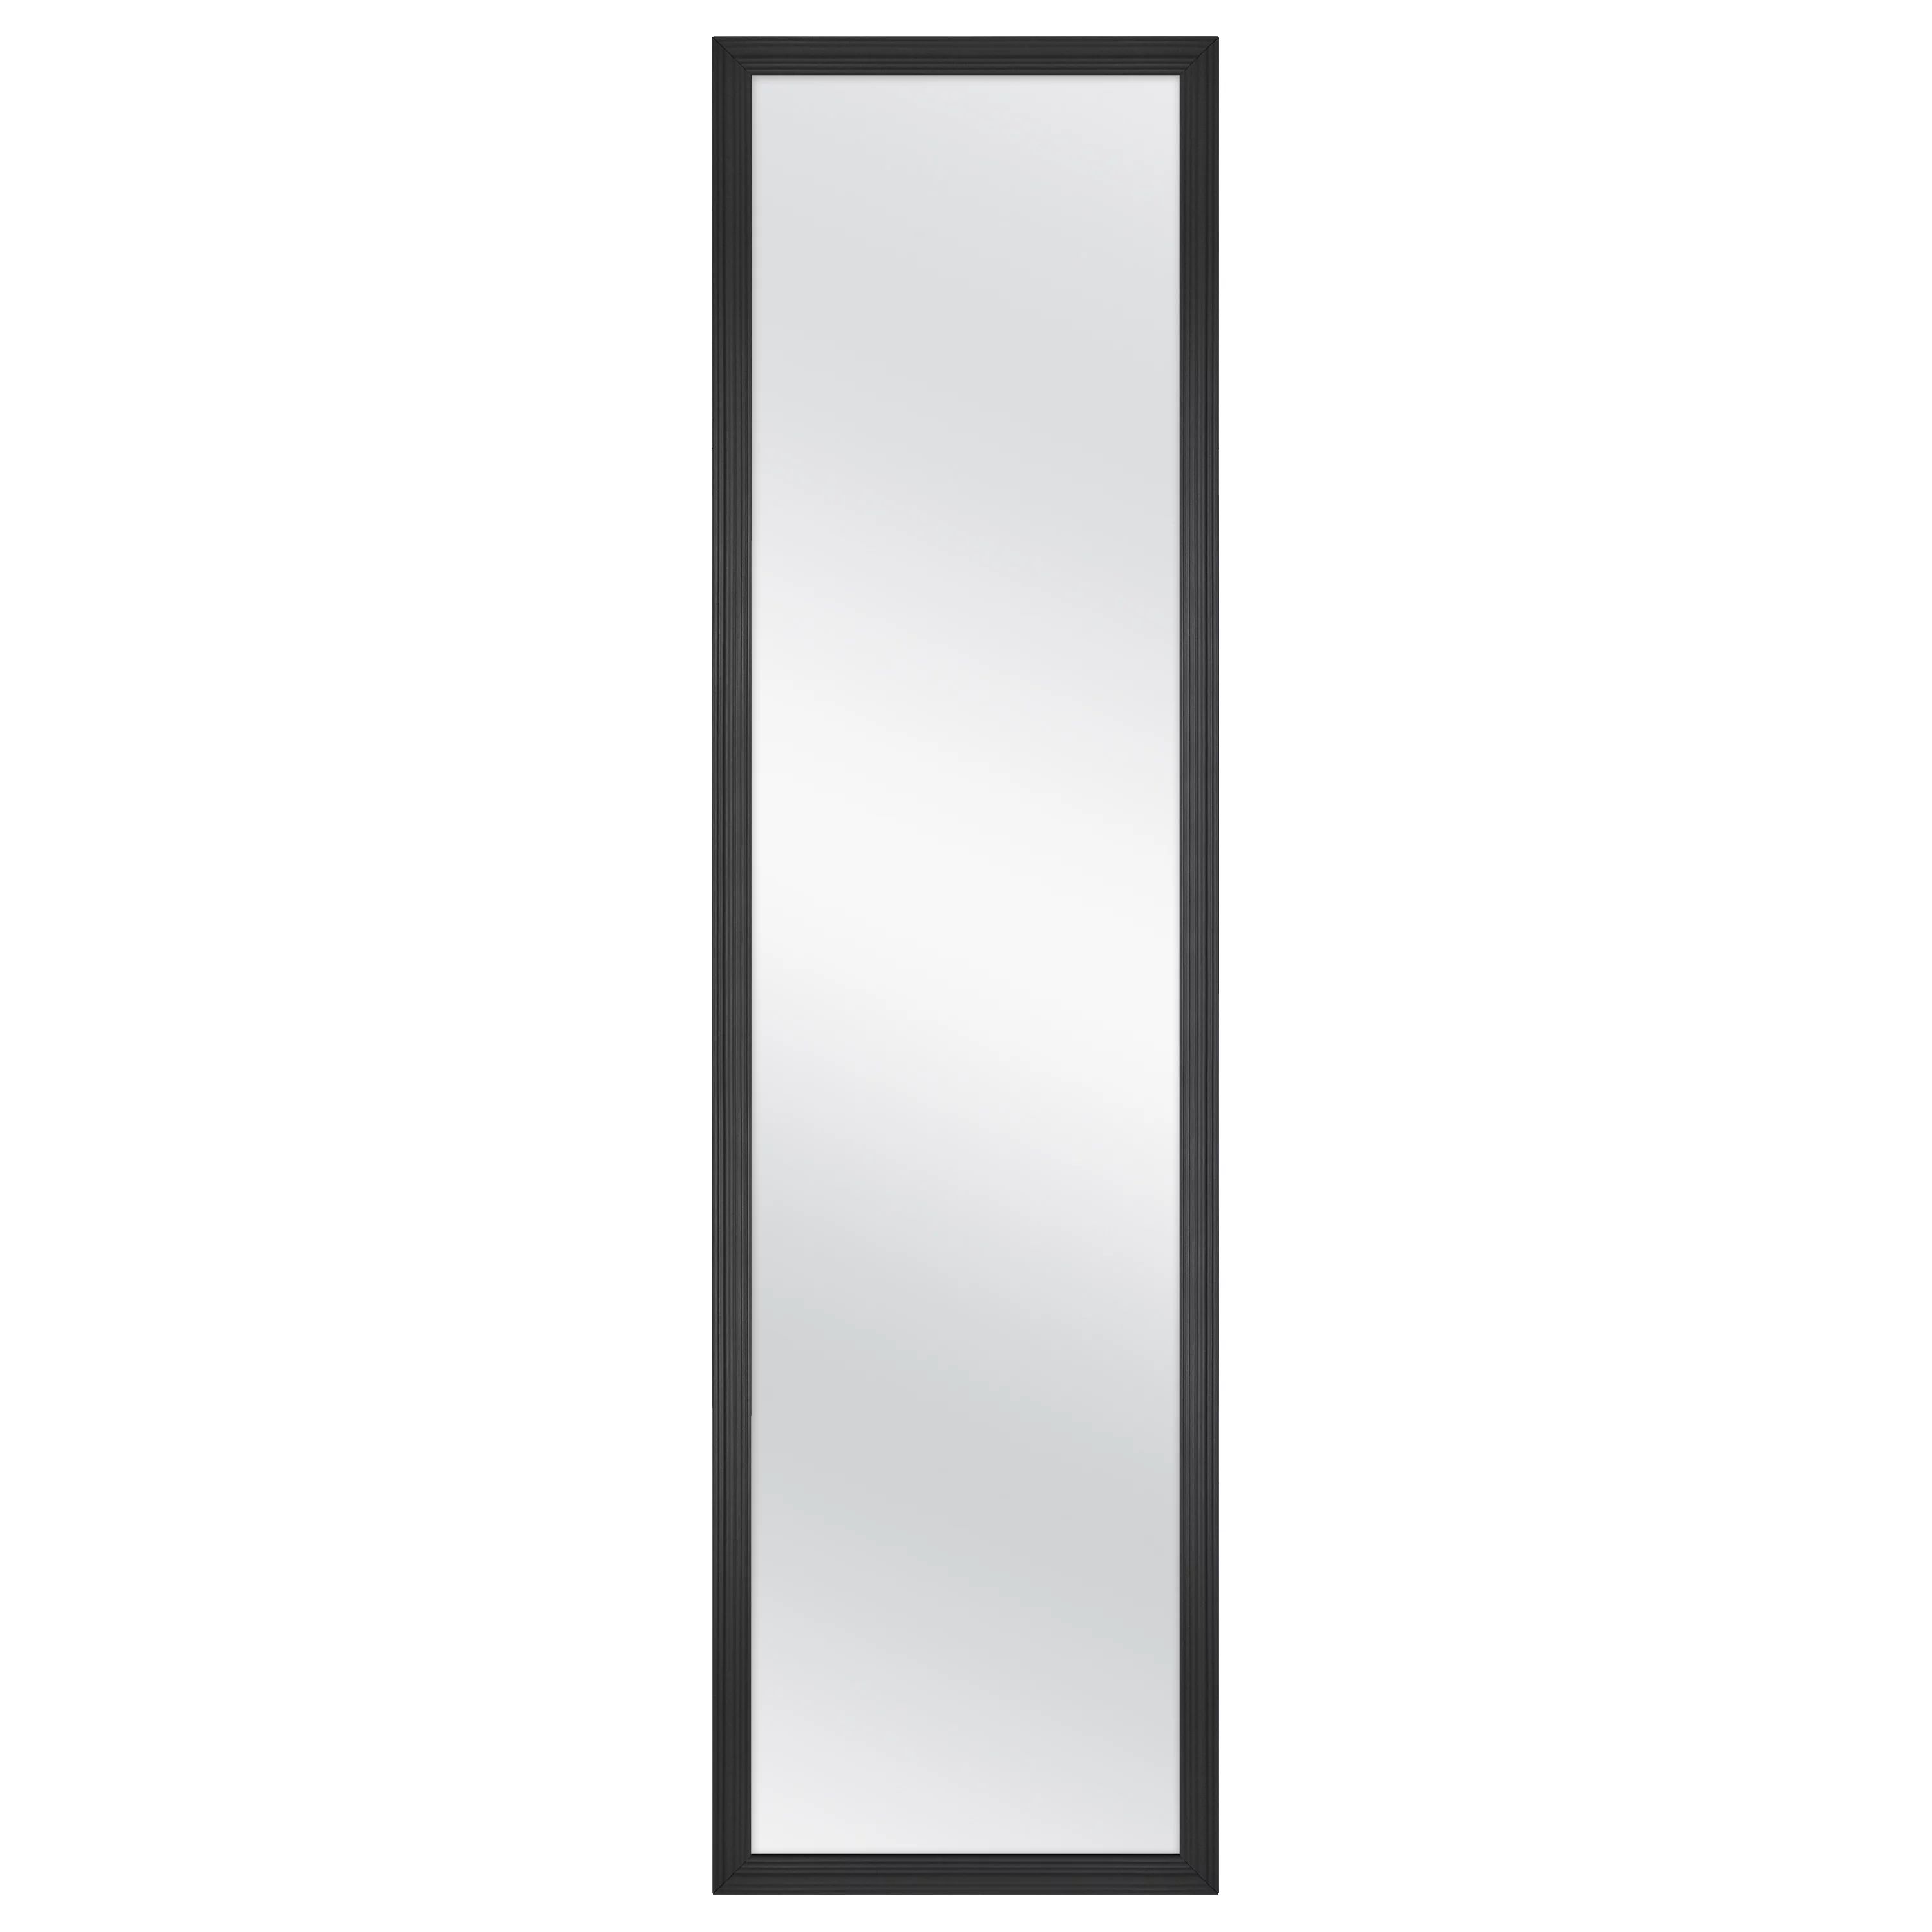 Mainstays 13 inch x 49 inch Black Rectangle Door Mirror | Walmart (US)